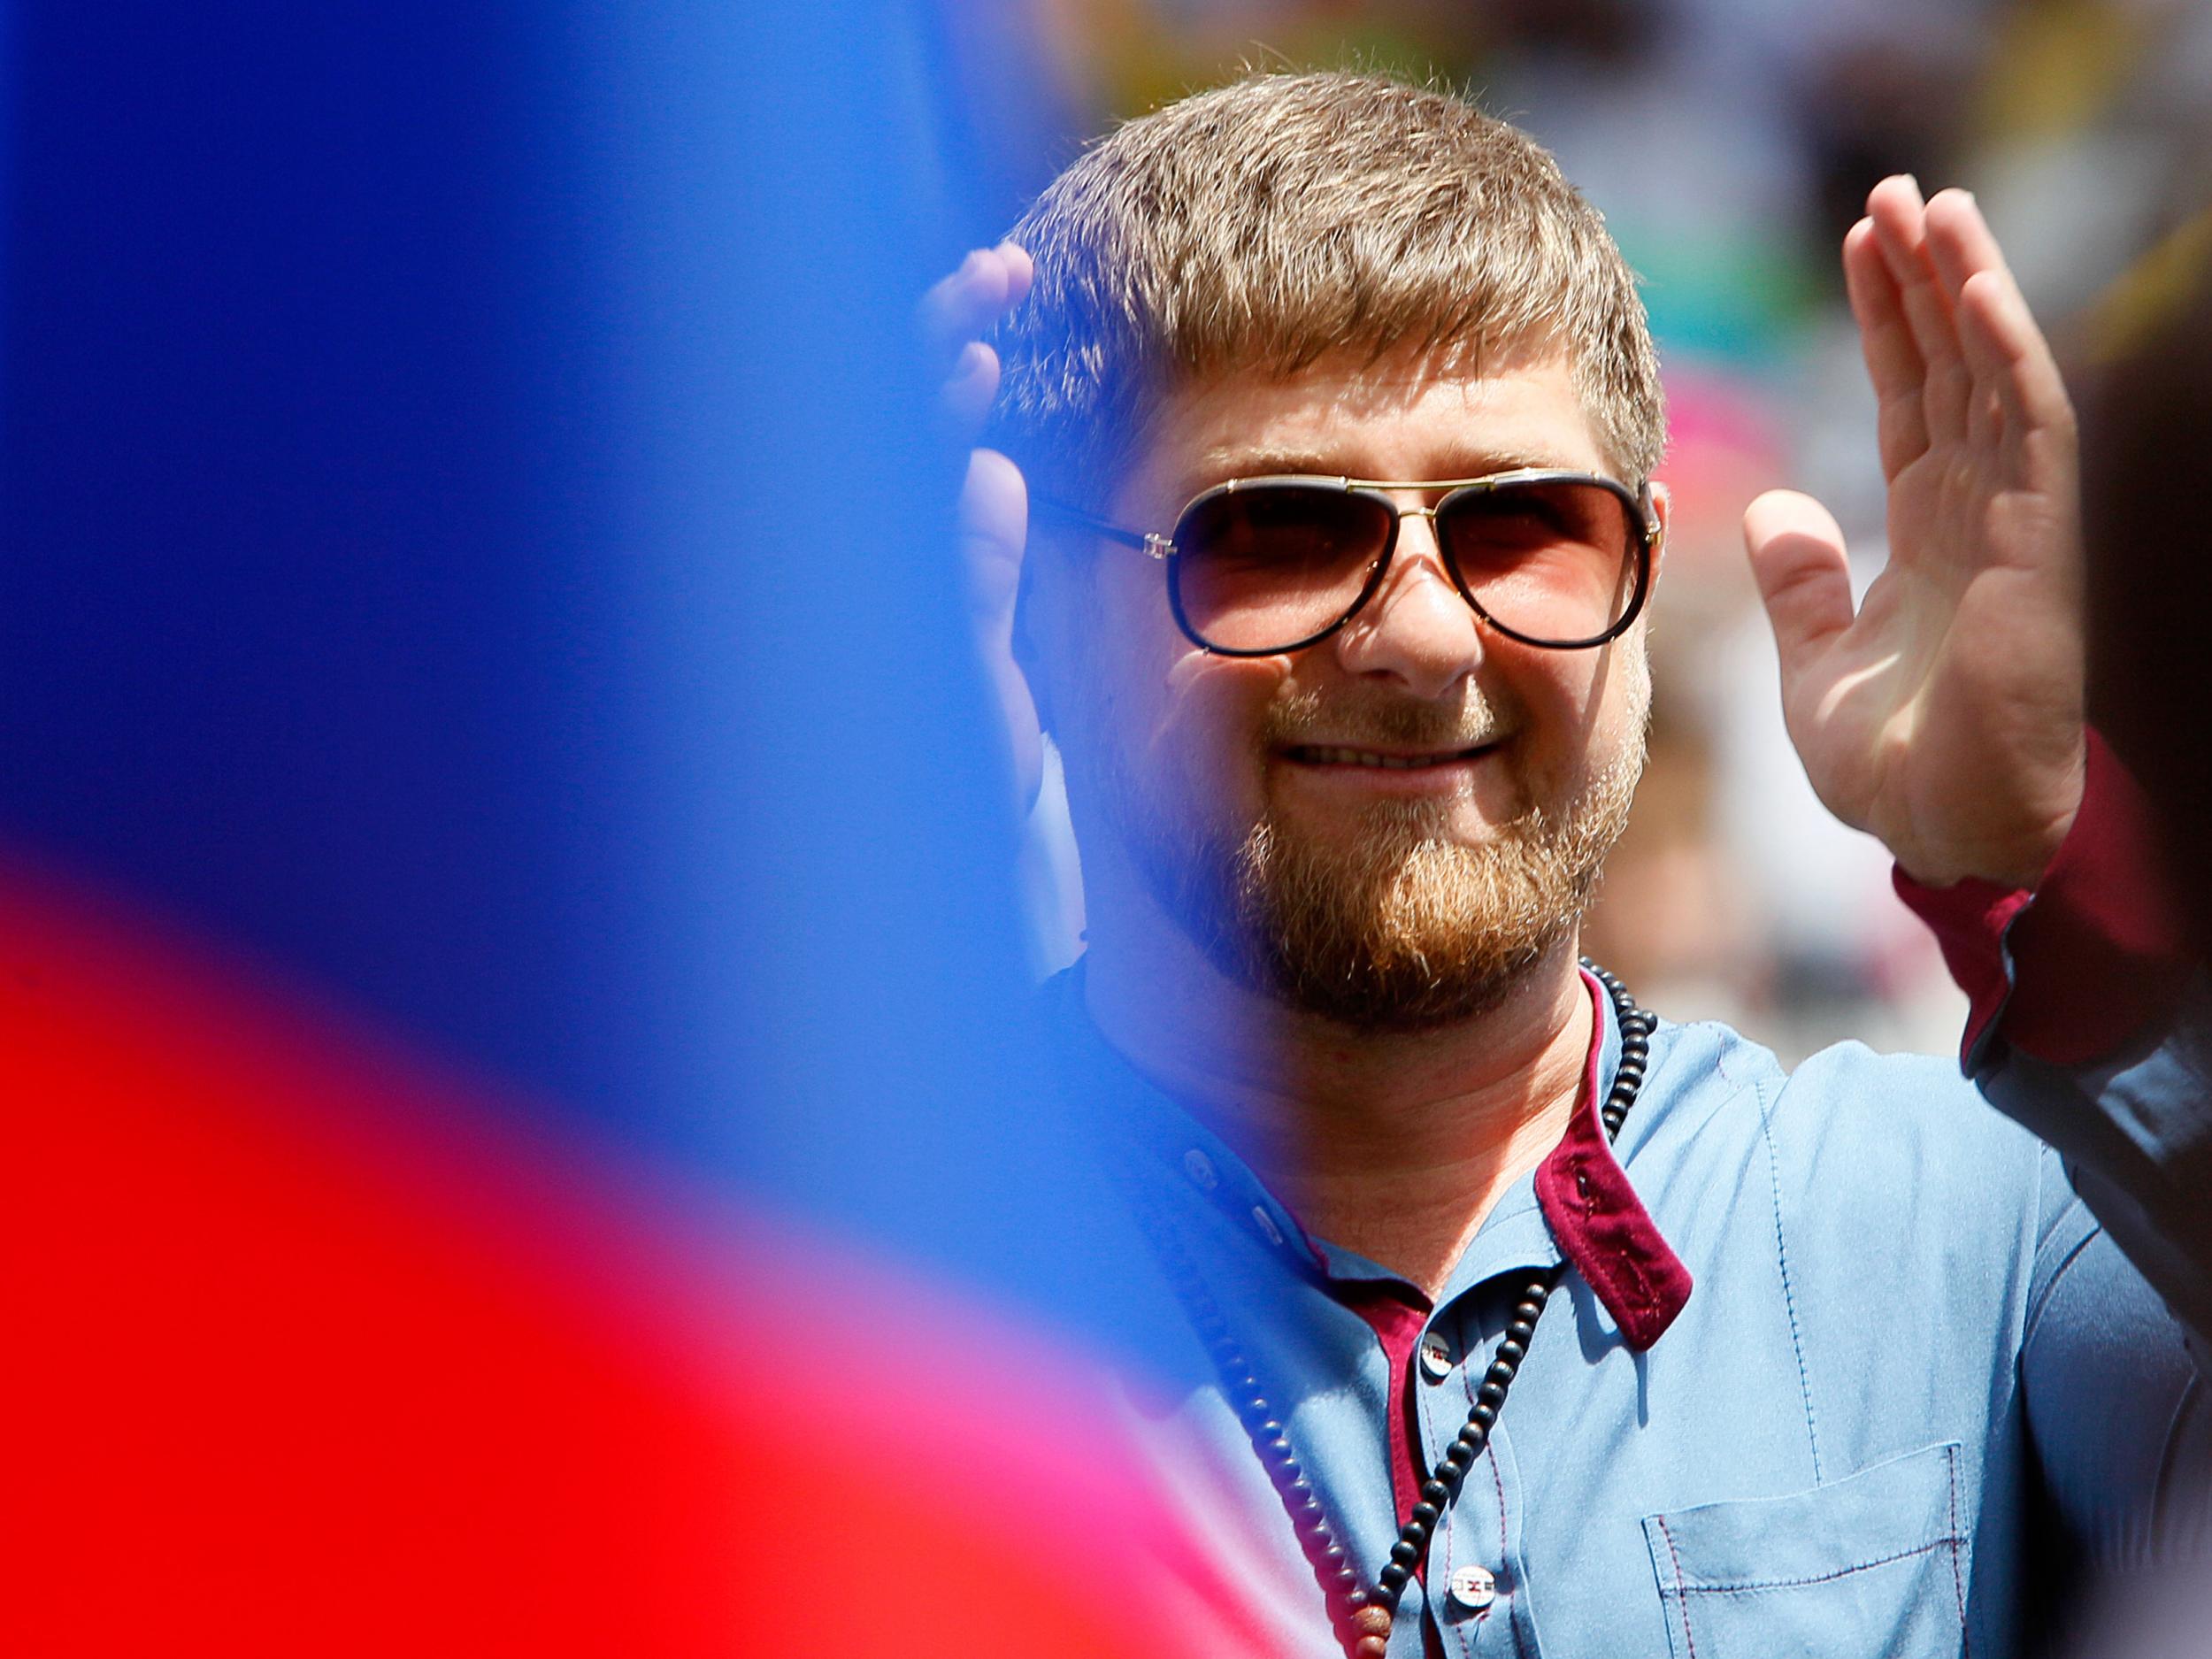 Ramzan Kadyrov is a close friend of Putin